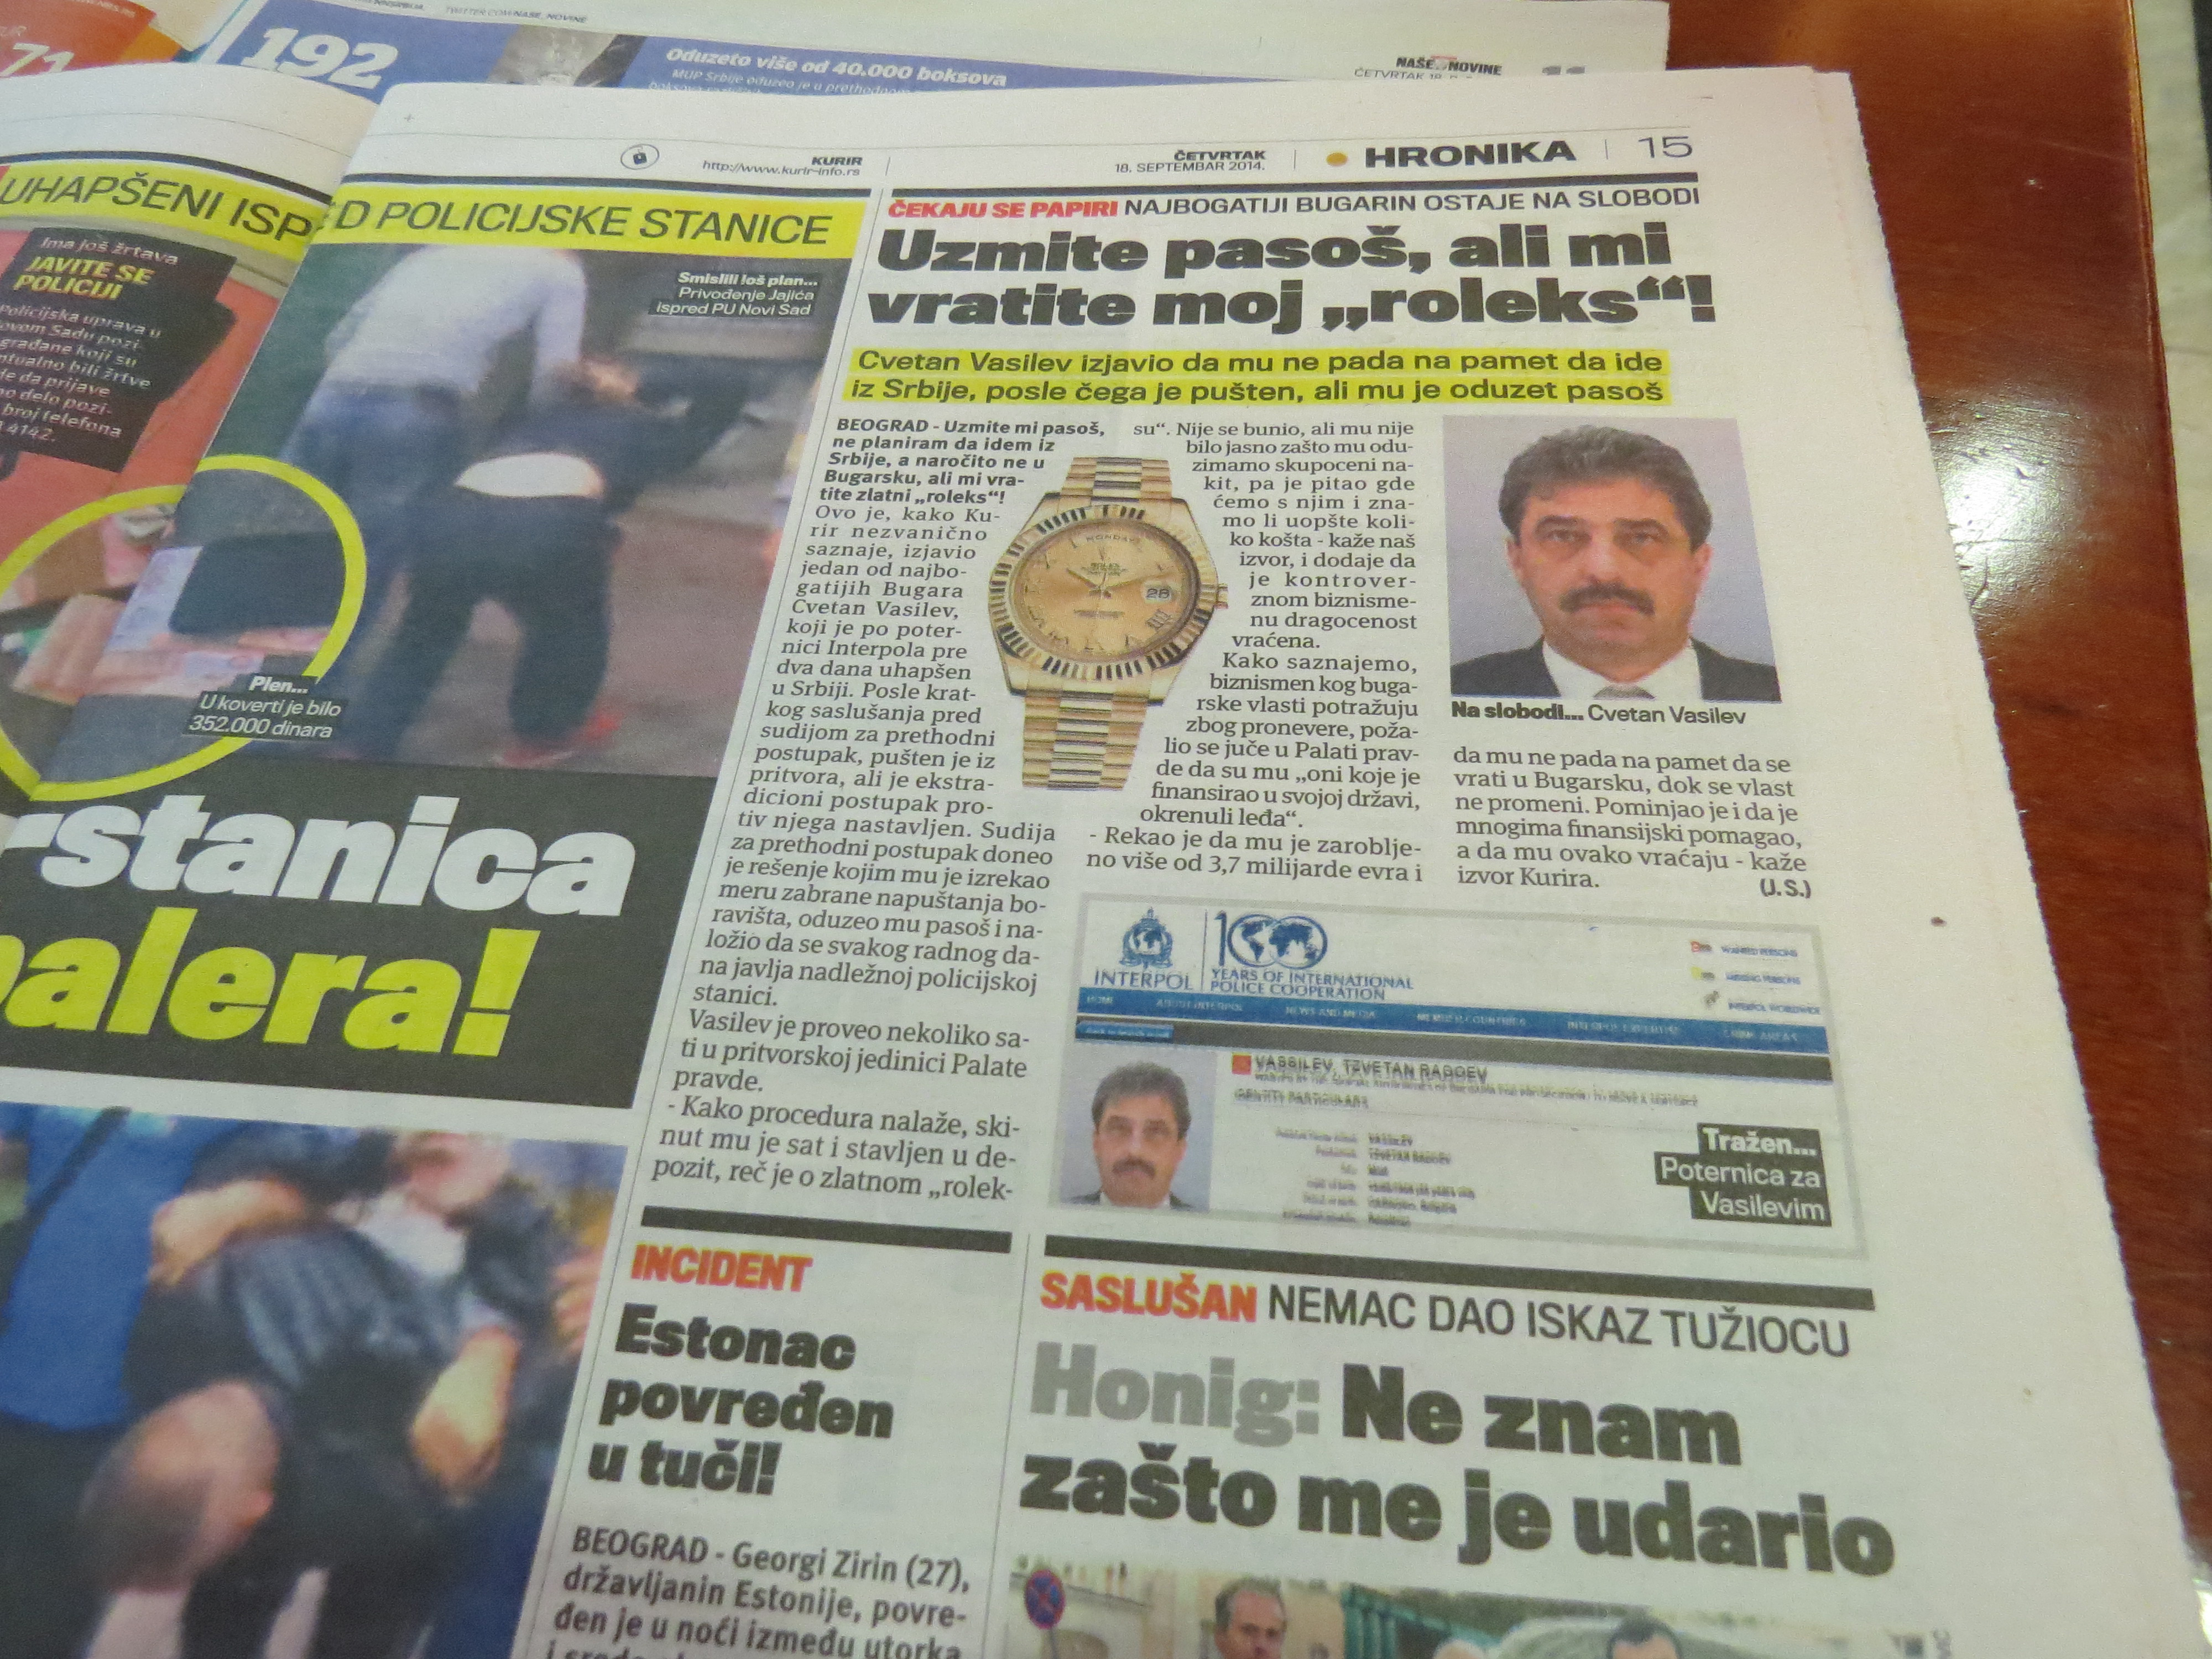 Сръбският вестник ”Курир” публикува материал за Цветан Василев